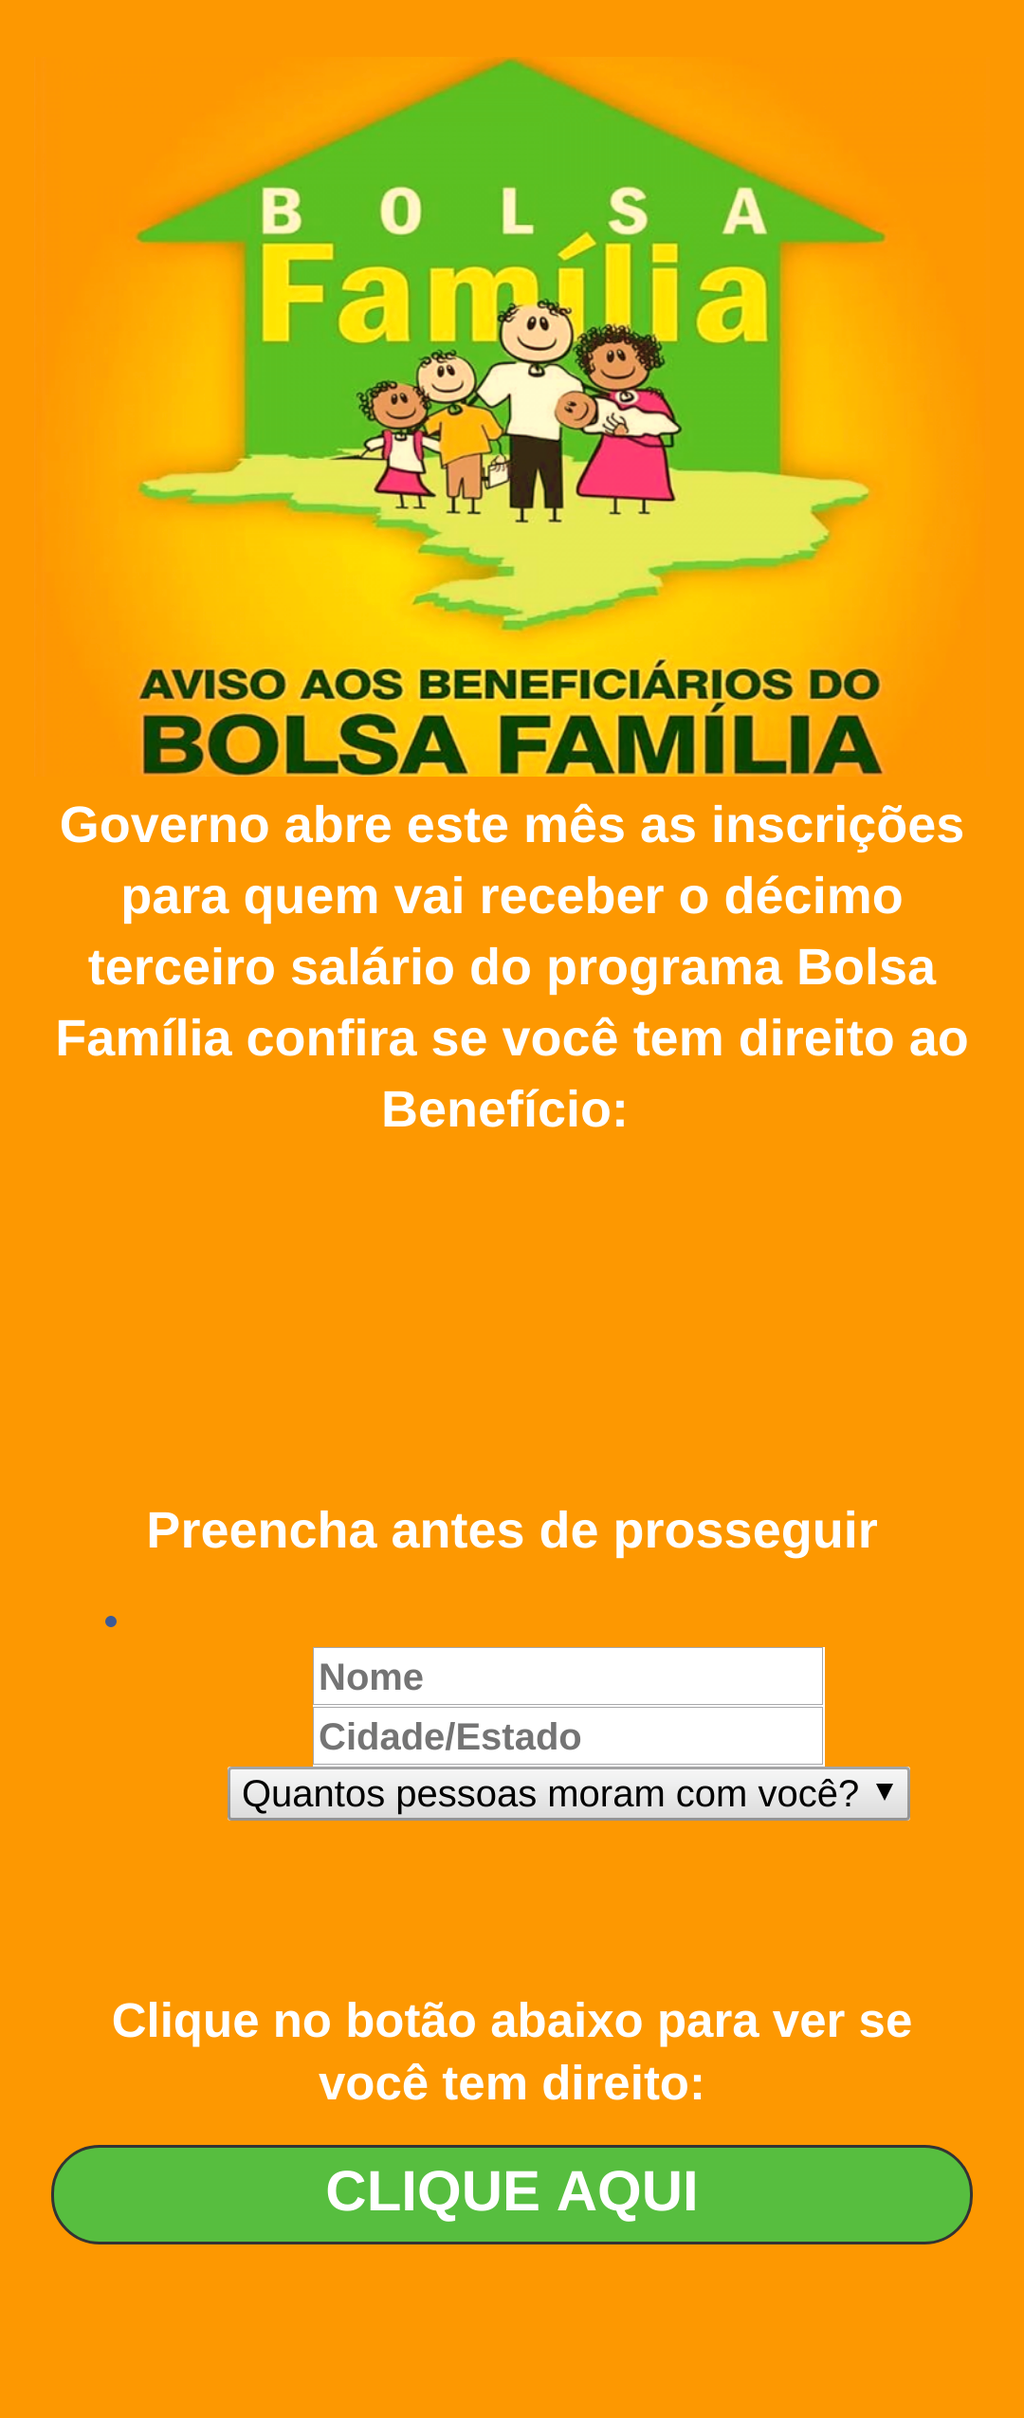 Ao clicar no link da mensagem, o usuário é levado a um site falso do Programa Bolsa Família, usado pelos criminosos para roubar dados pessoais (Imagem: dfndr lab)